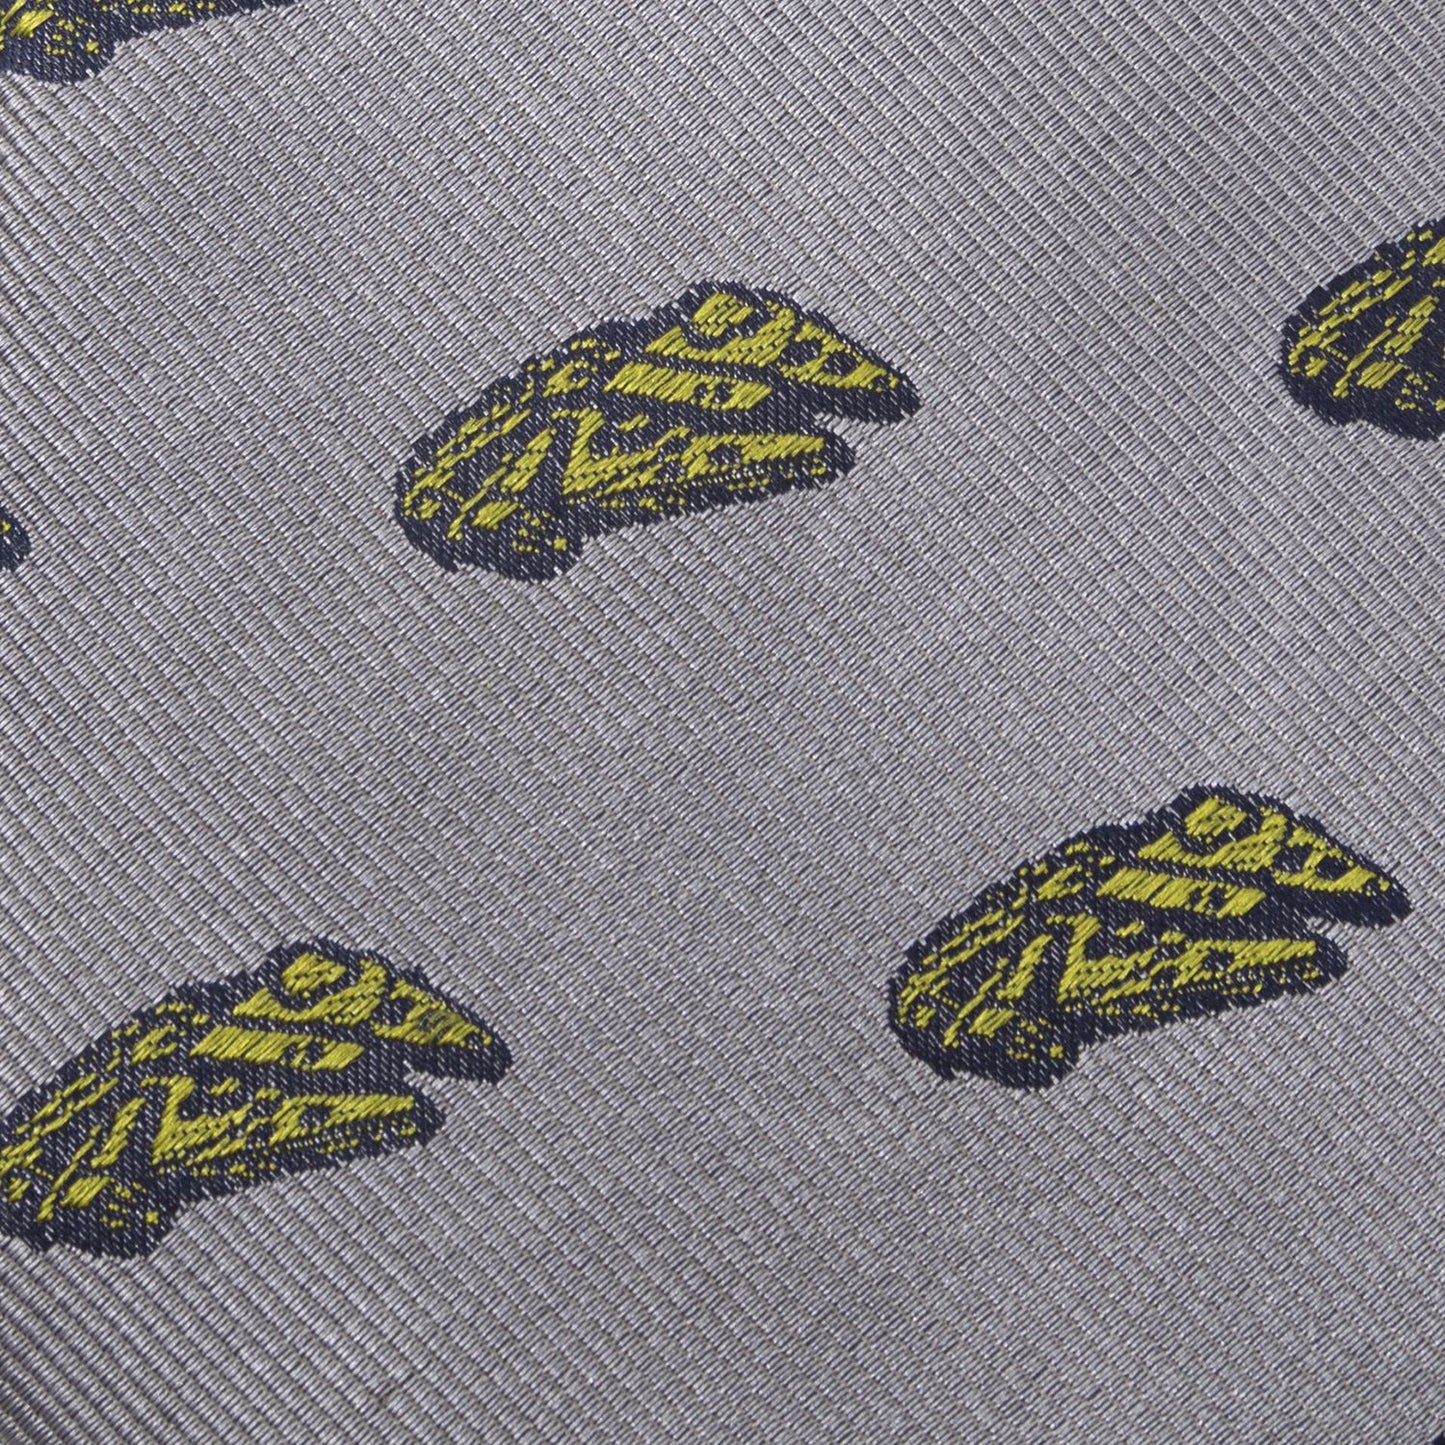 Millennium Falcon (Gray & Olive Green) Star Wars Fine Necktie